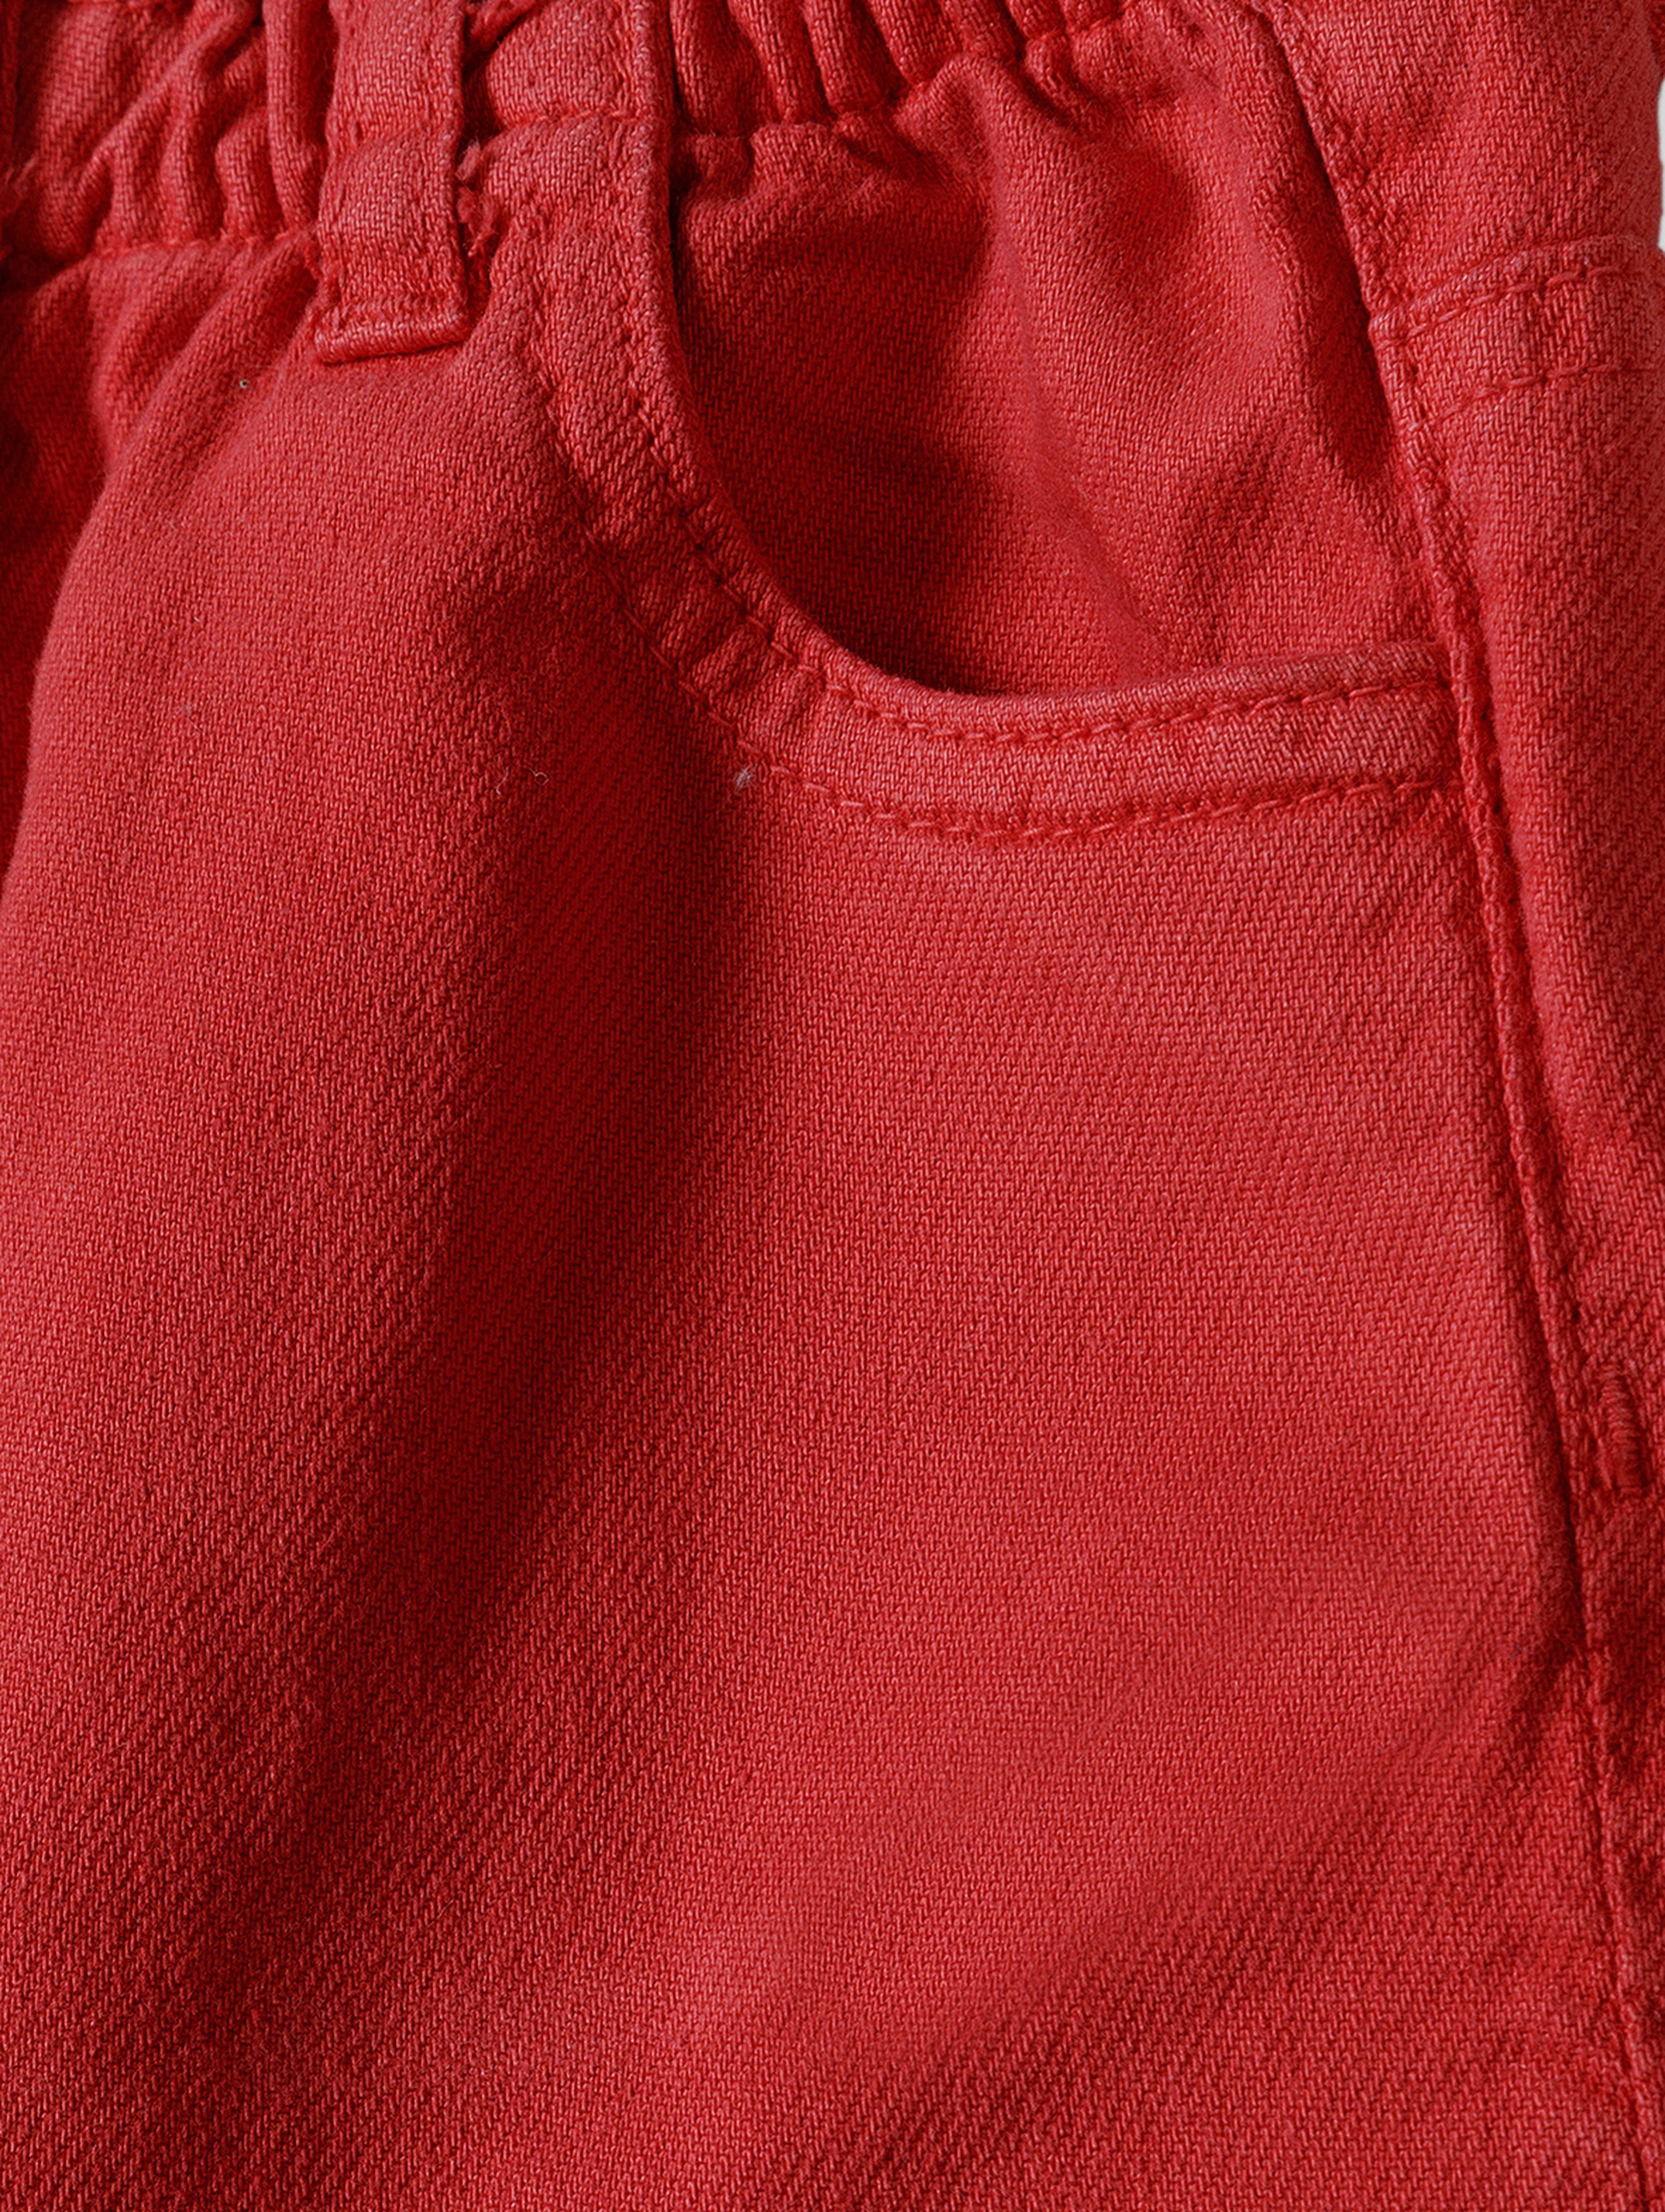 Krótkie spodenki tkaninowe dla dziewczynki- czerwone